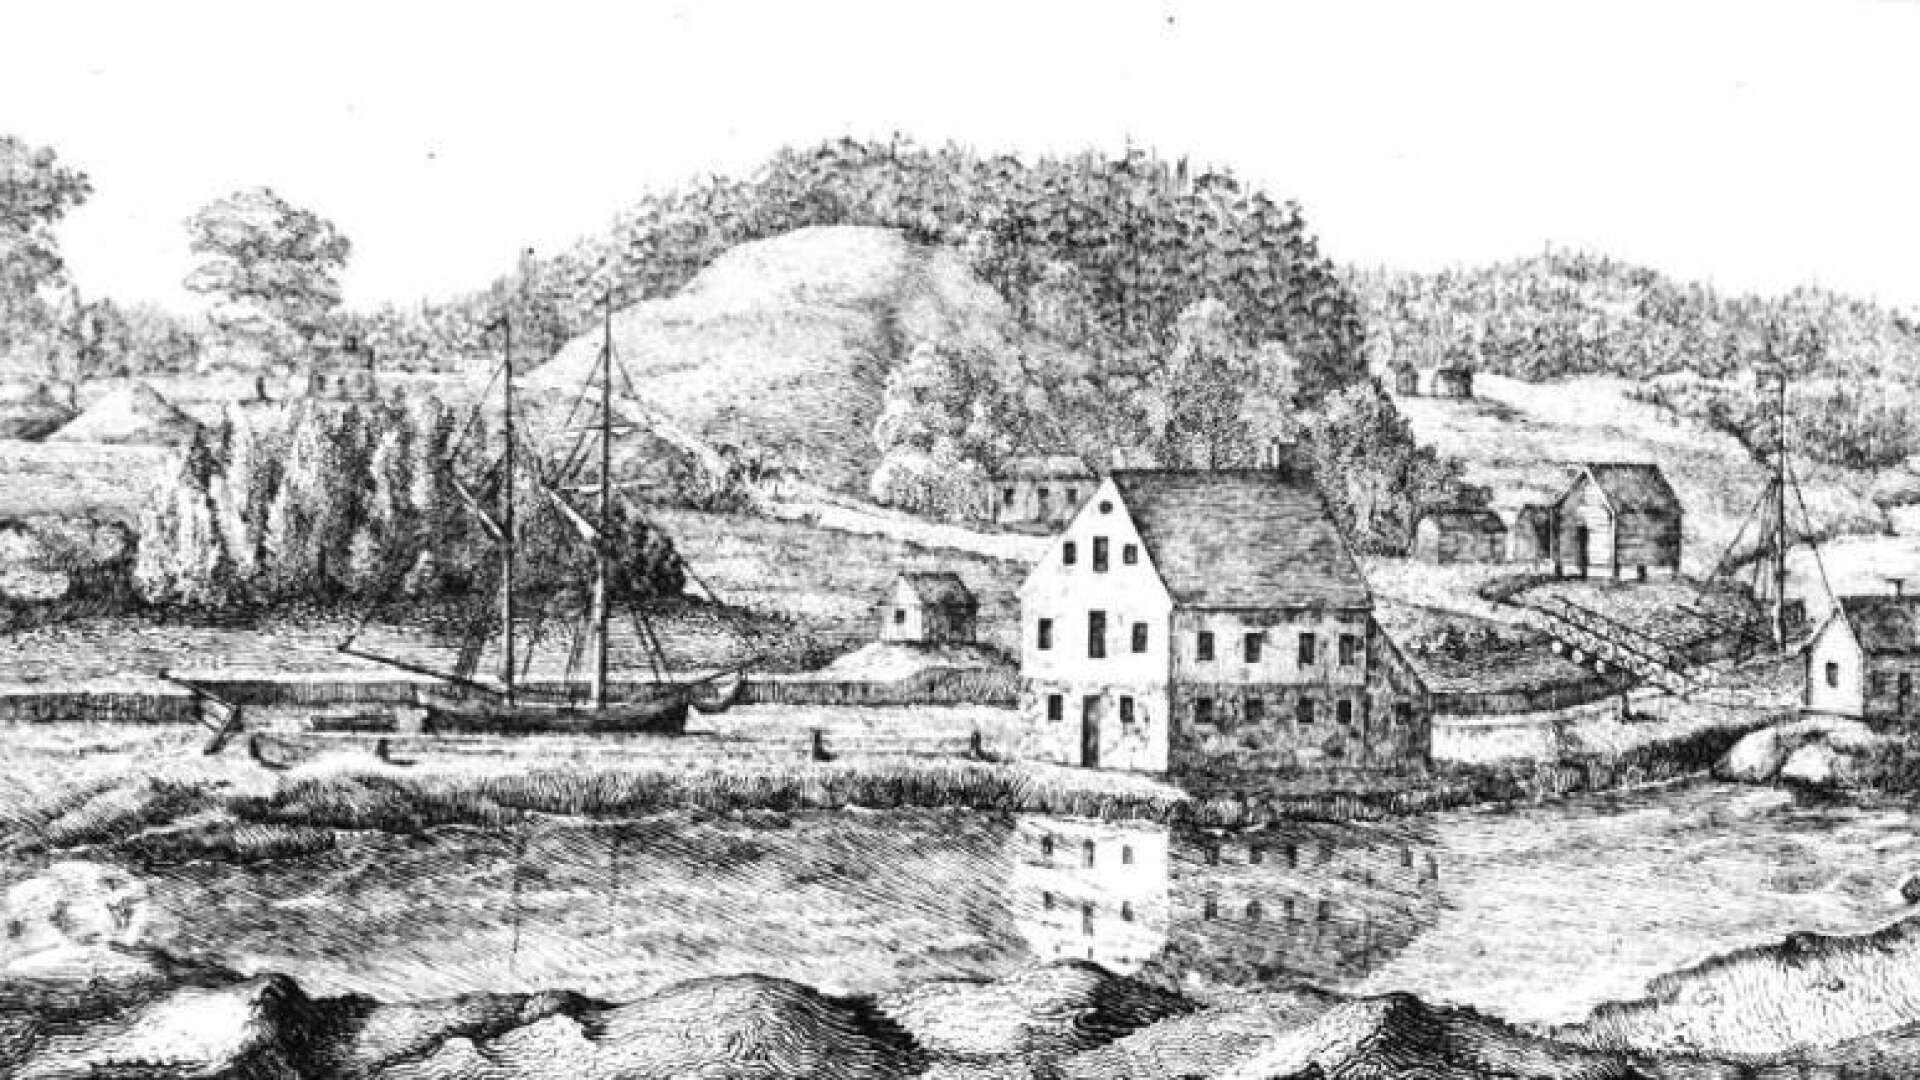 Redan 1835 trycktes aktiebrev med motiv som visade fartyg i kanalen. Då hade dock inte kanalen ännu grävts. Det skedde 1835-1837. Det var alltså en framtidsvision som visades. Stenmagasinet fanns emellertid redan då och hade sin givna plats i motivet.